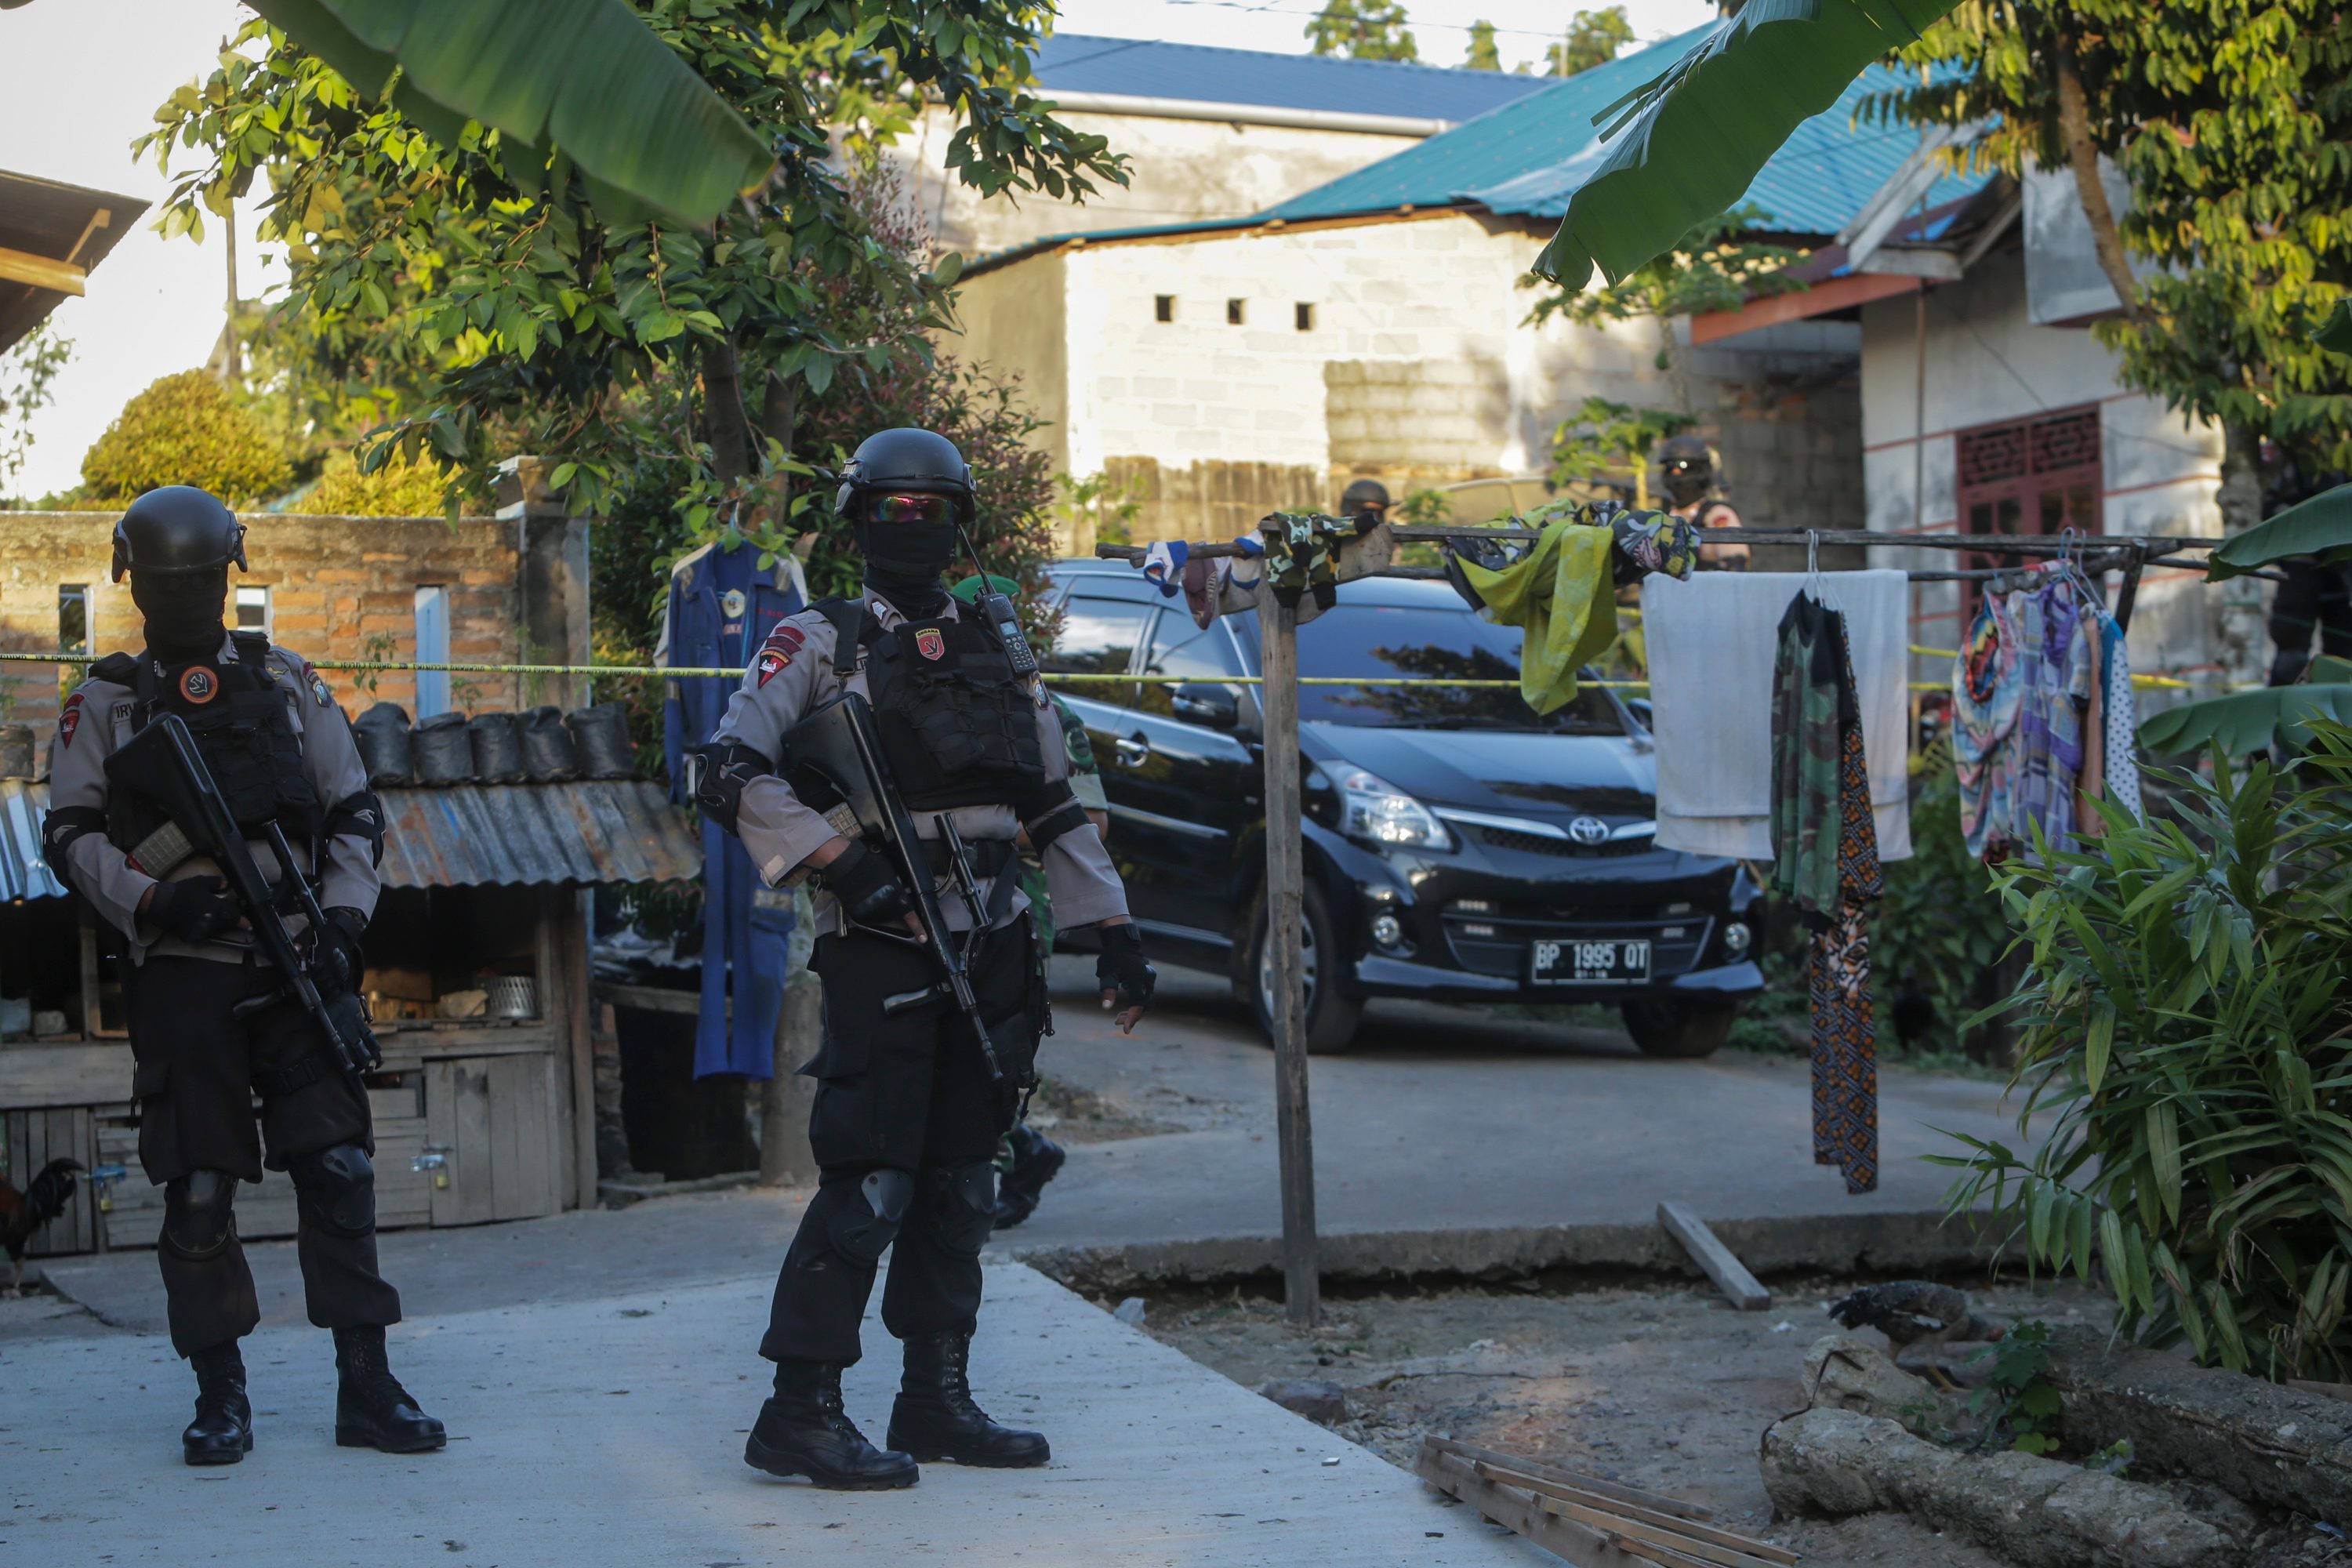 Anggota polisi bersenjata lengkap berjaga di jalan menuju rumah terduga teroris saat dilakukan penggeledahan oleh Tim Densus 88 Anti Teror Polri di Batam, Kepulauan Riau, pada 21 Desember 2016. Foto oleh M N Kanwa/Antara 